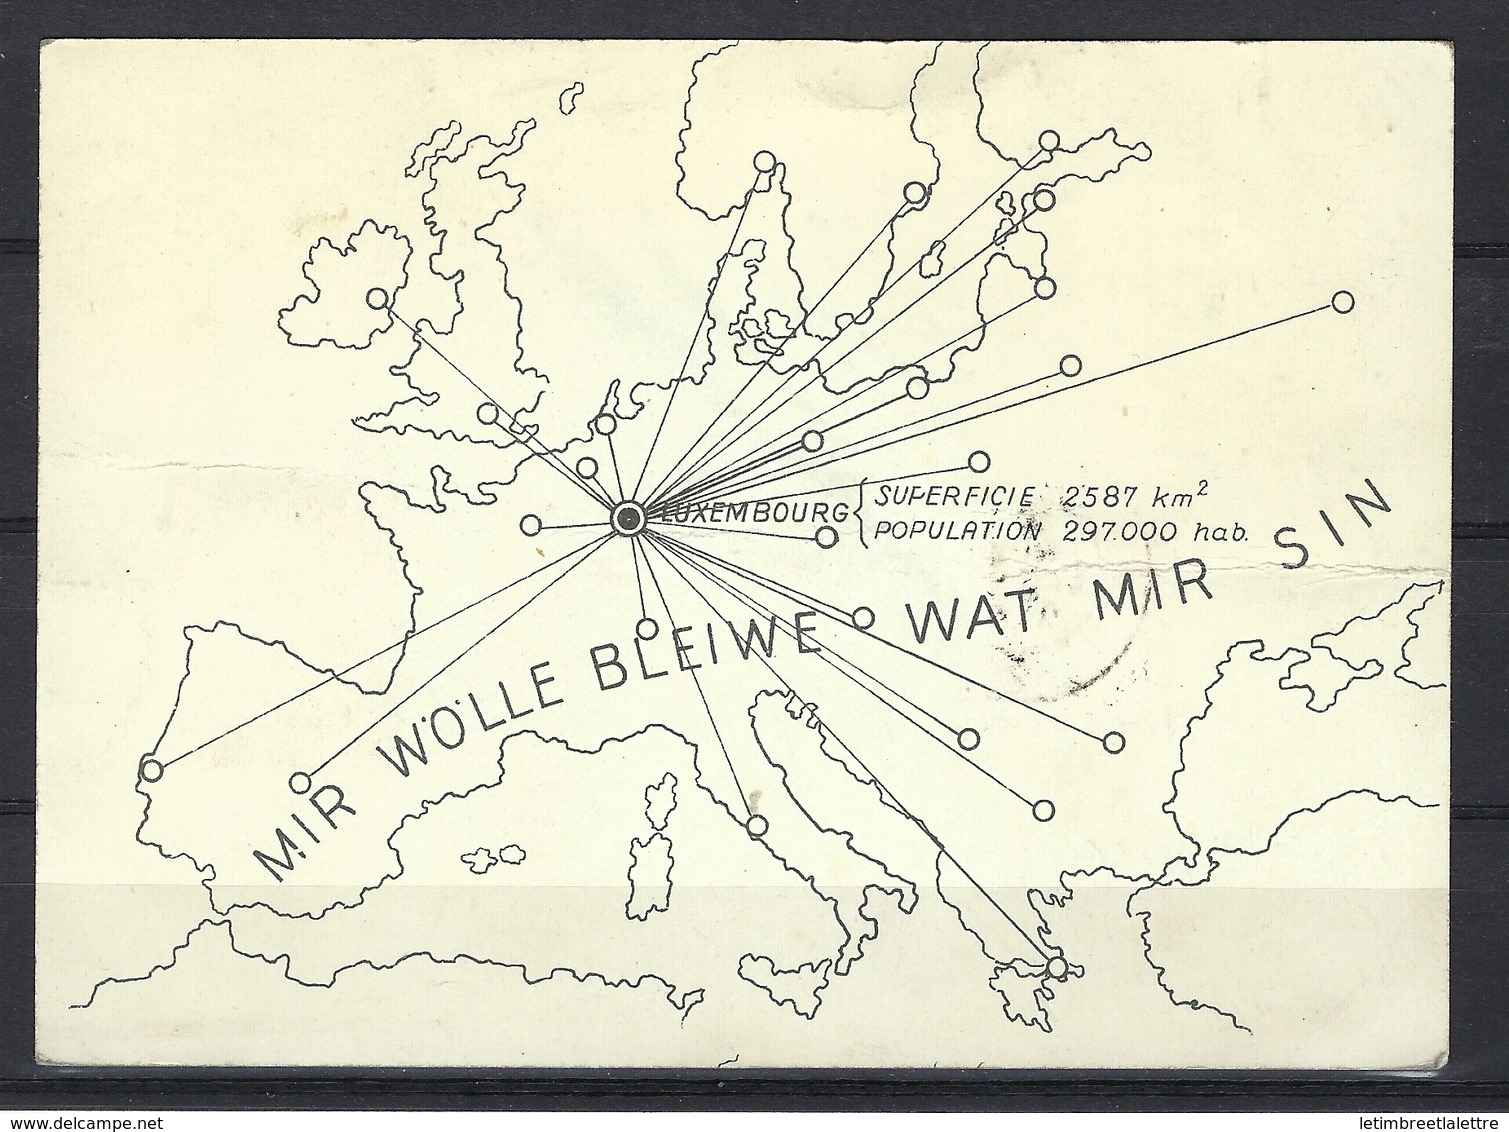 Carte Commémorative Du Courrier Aérien Spécial " Esch - Londres " En 1939, Affranchissement Mixte - Brieven En Documenten